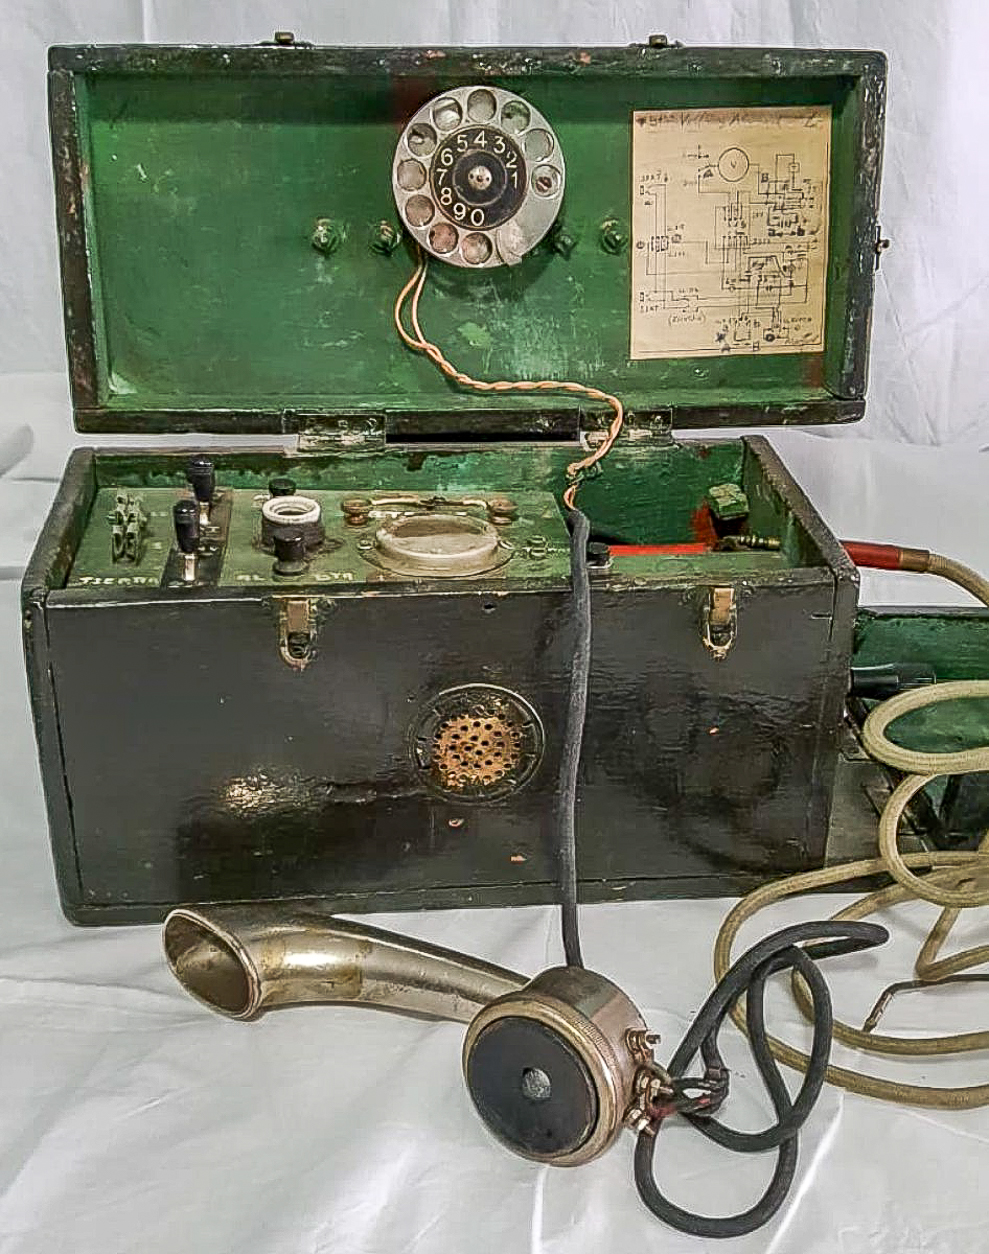 Telèfon de proves original utilitzat a la primera central automàtica de l'estat, inaugurada a Balaguer l'any 1923. Foto de historiatelefonia.com